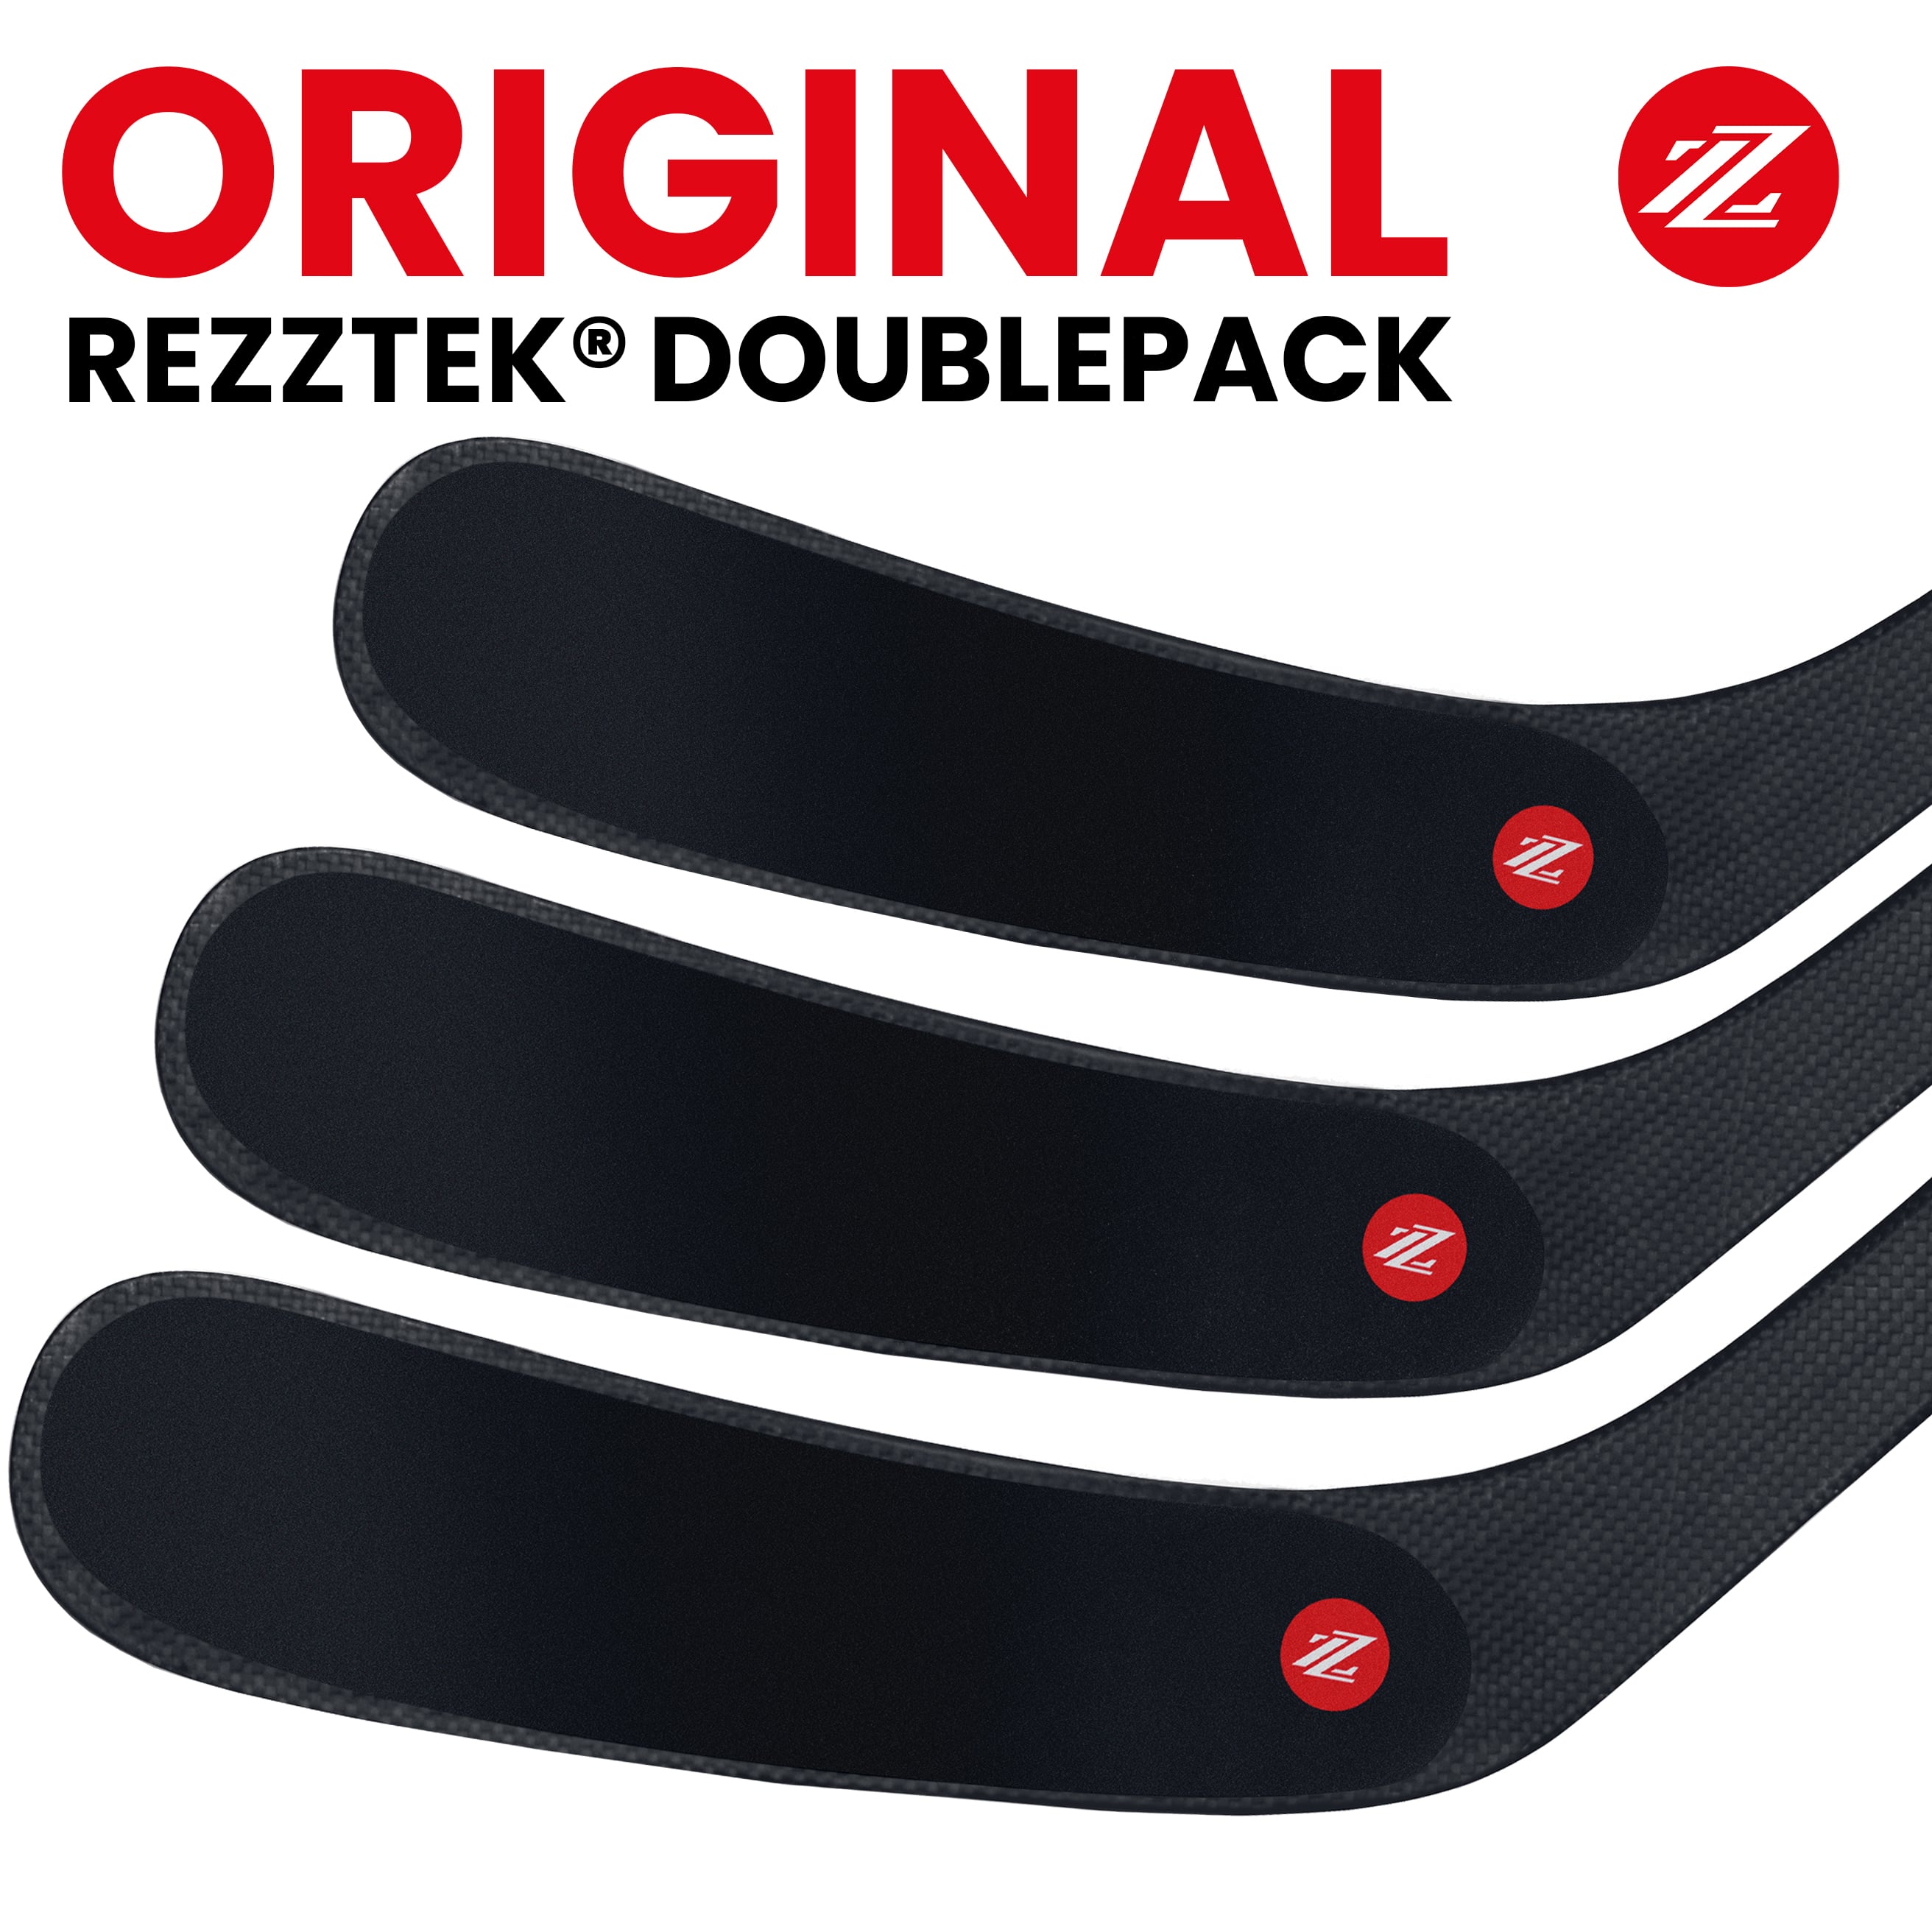 Original Rezztek® Doublepack Blade Grip